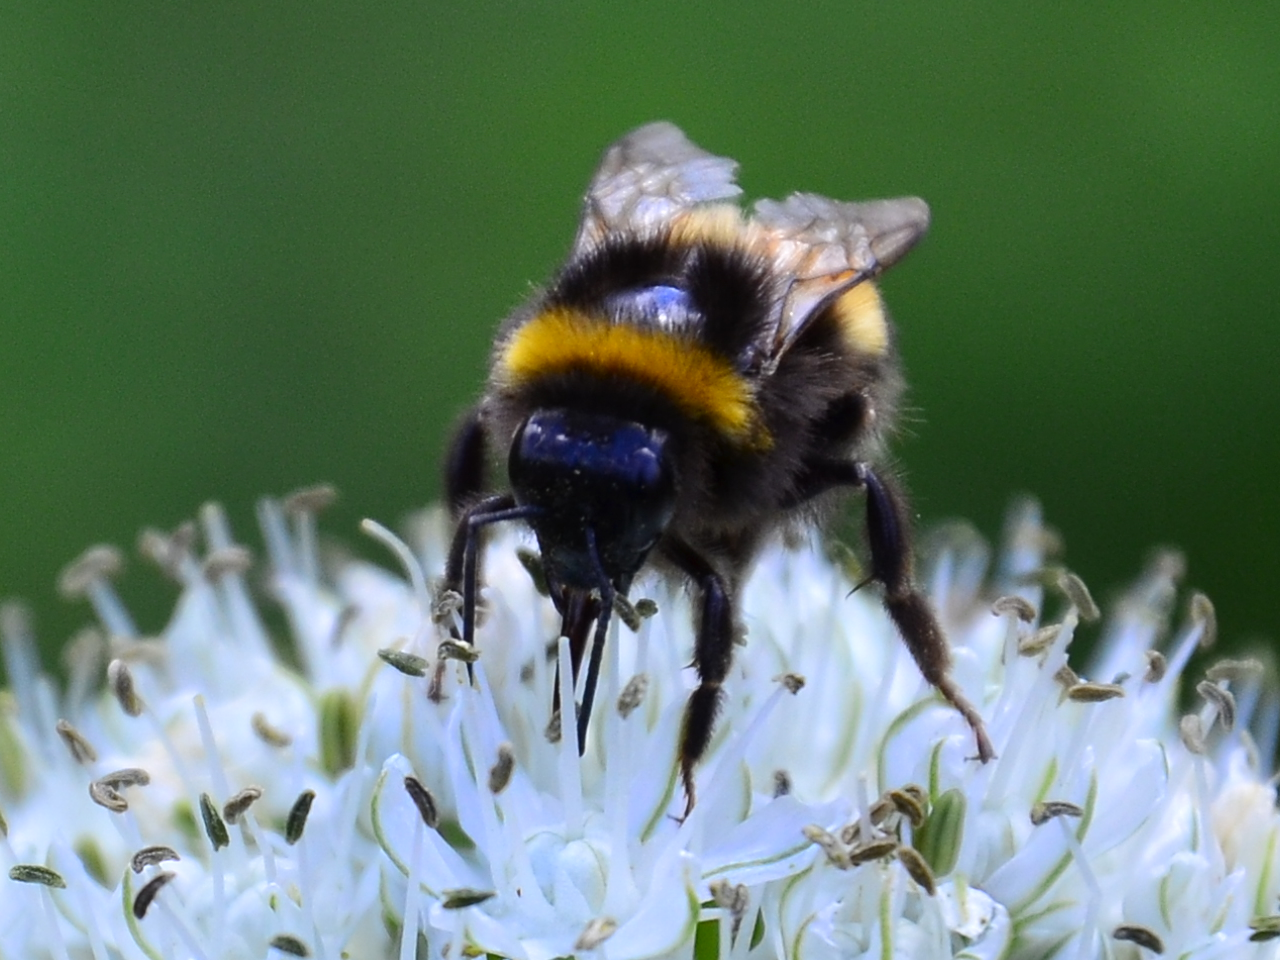 Close up of bumblebee